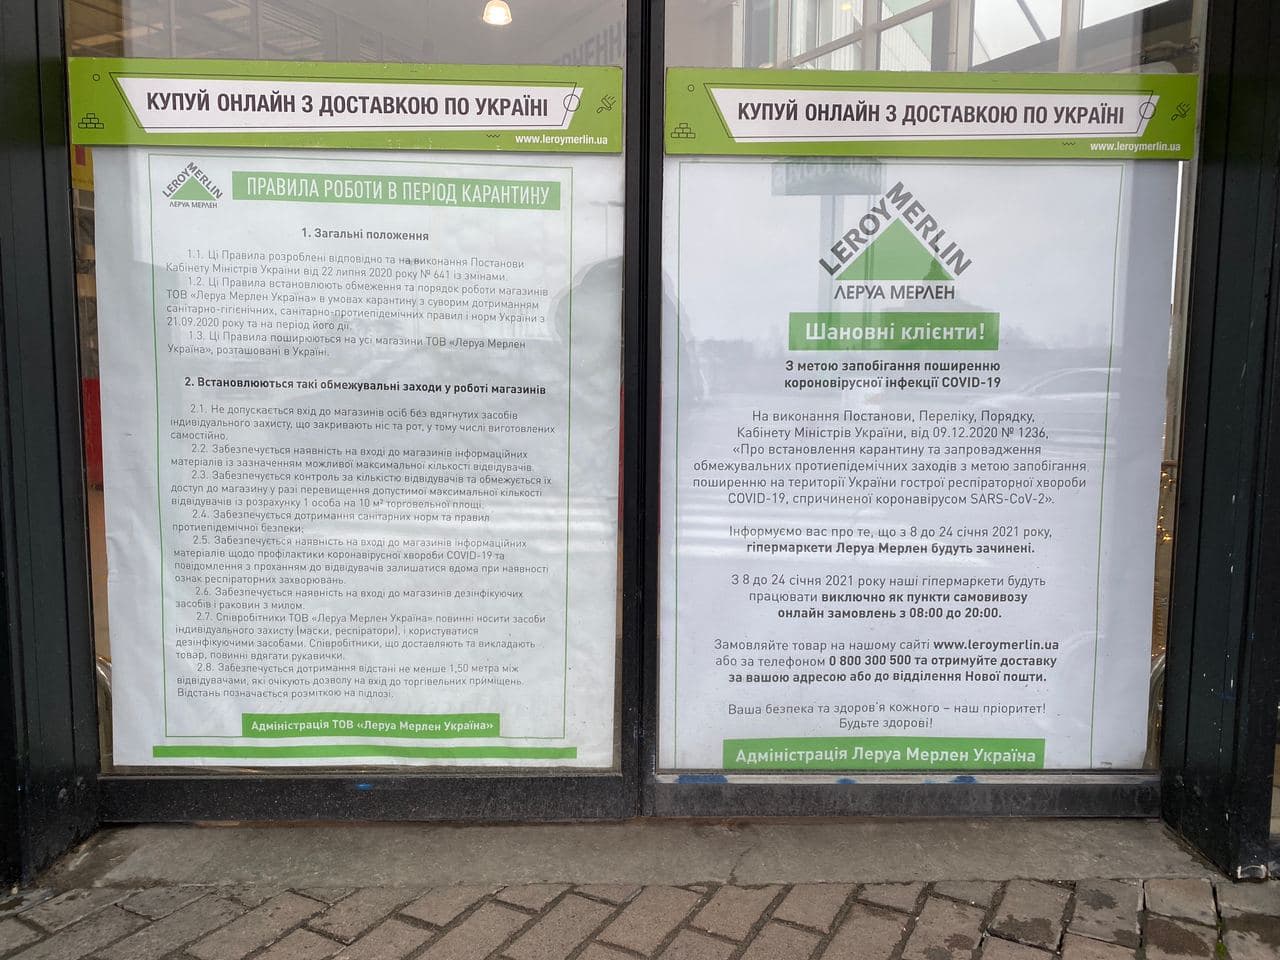 Сеть строительных гипермаркетов "Леруа Мерлен" вообще закрыта